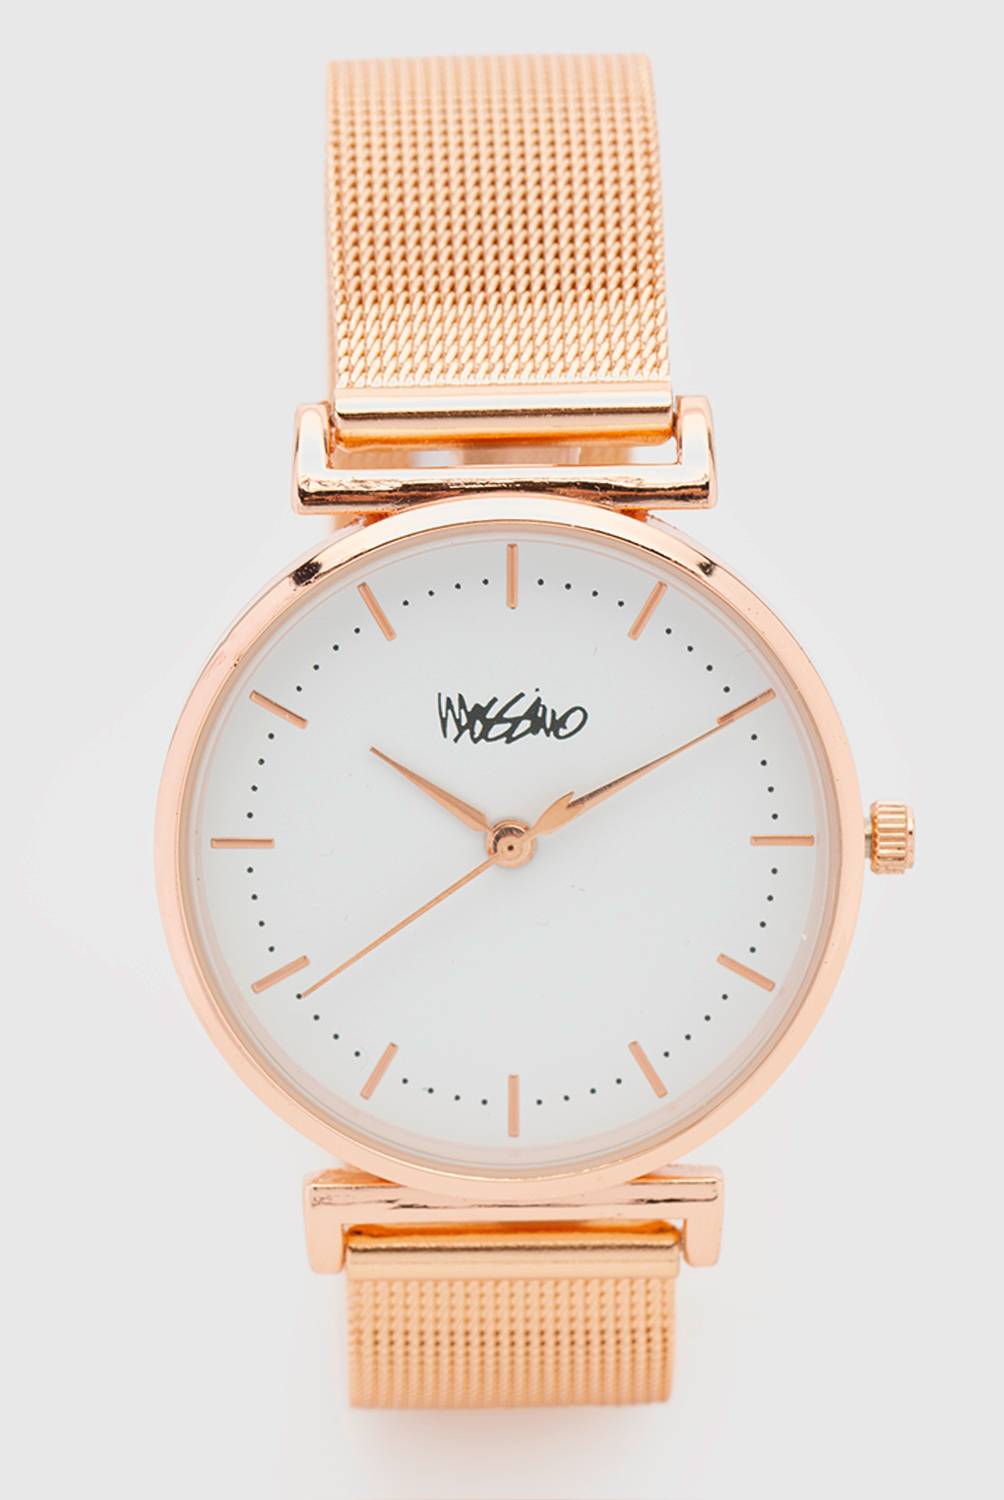 MOSSIMO - Set reloj análogo mujer + collar